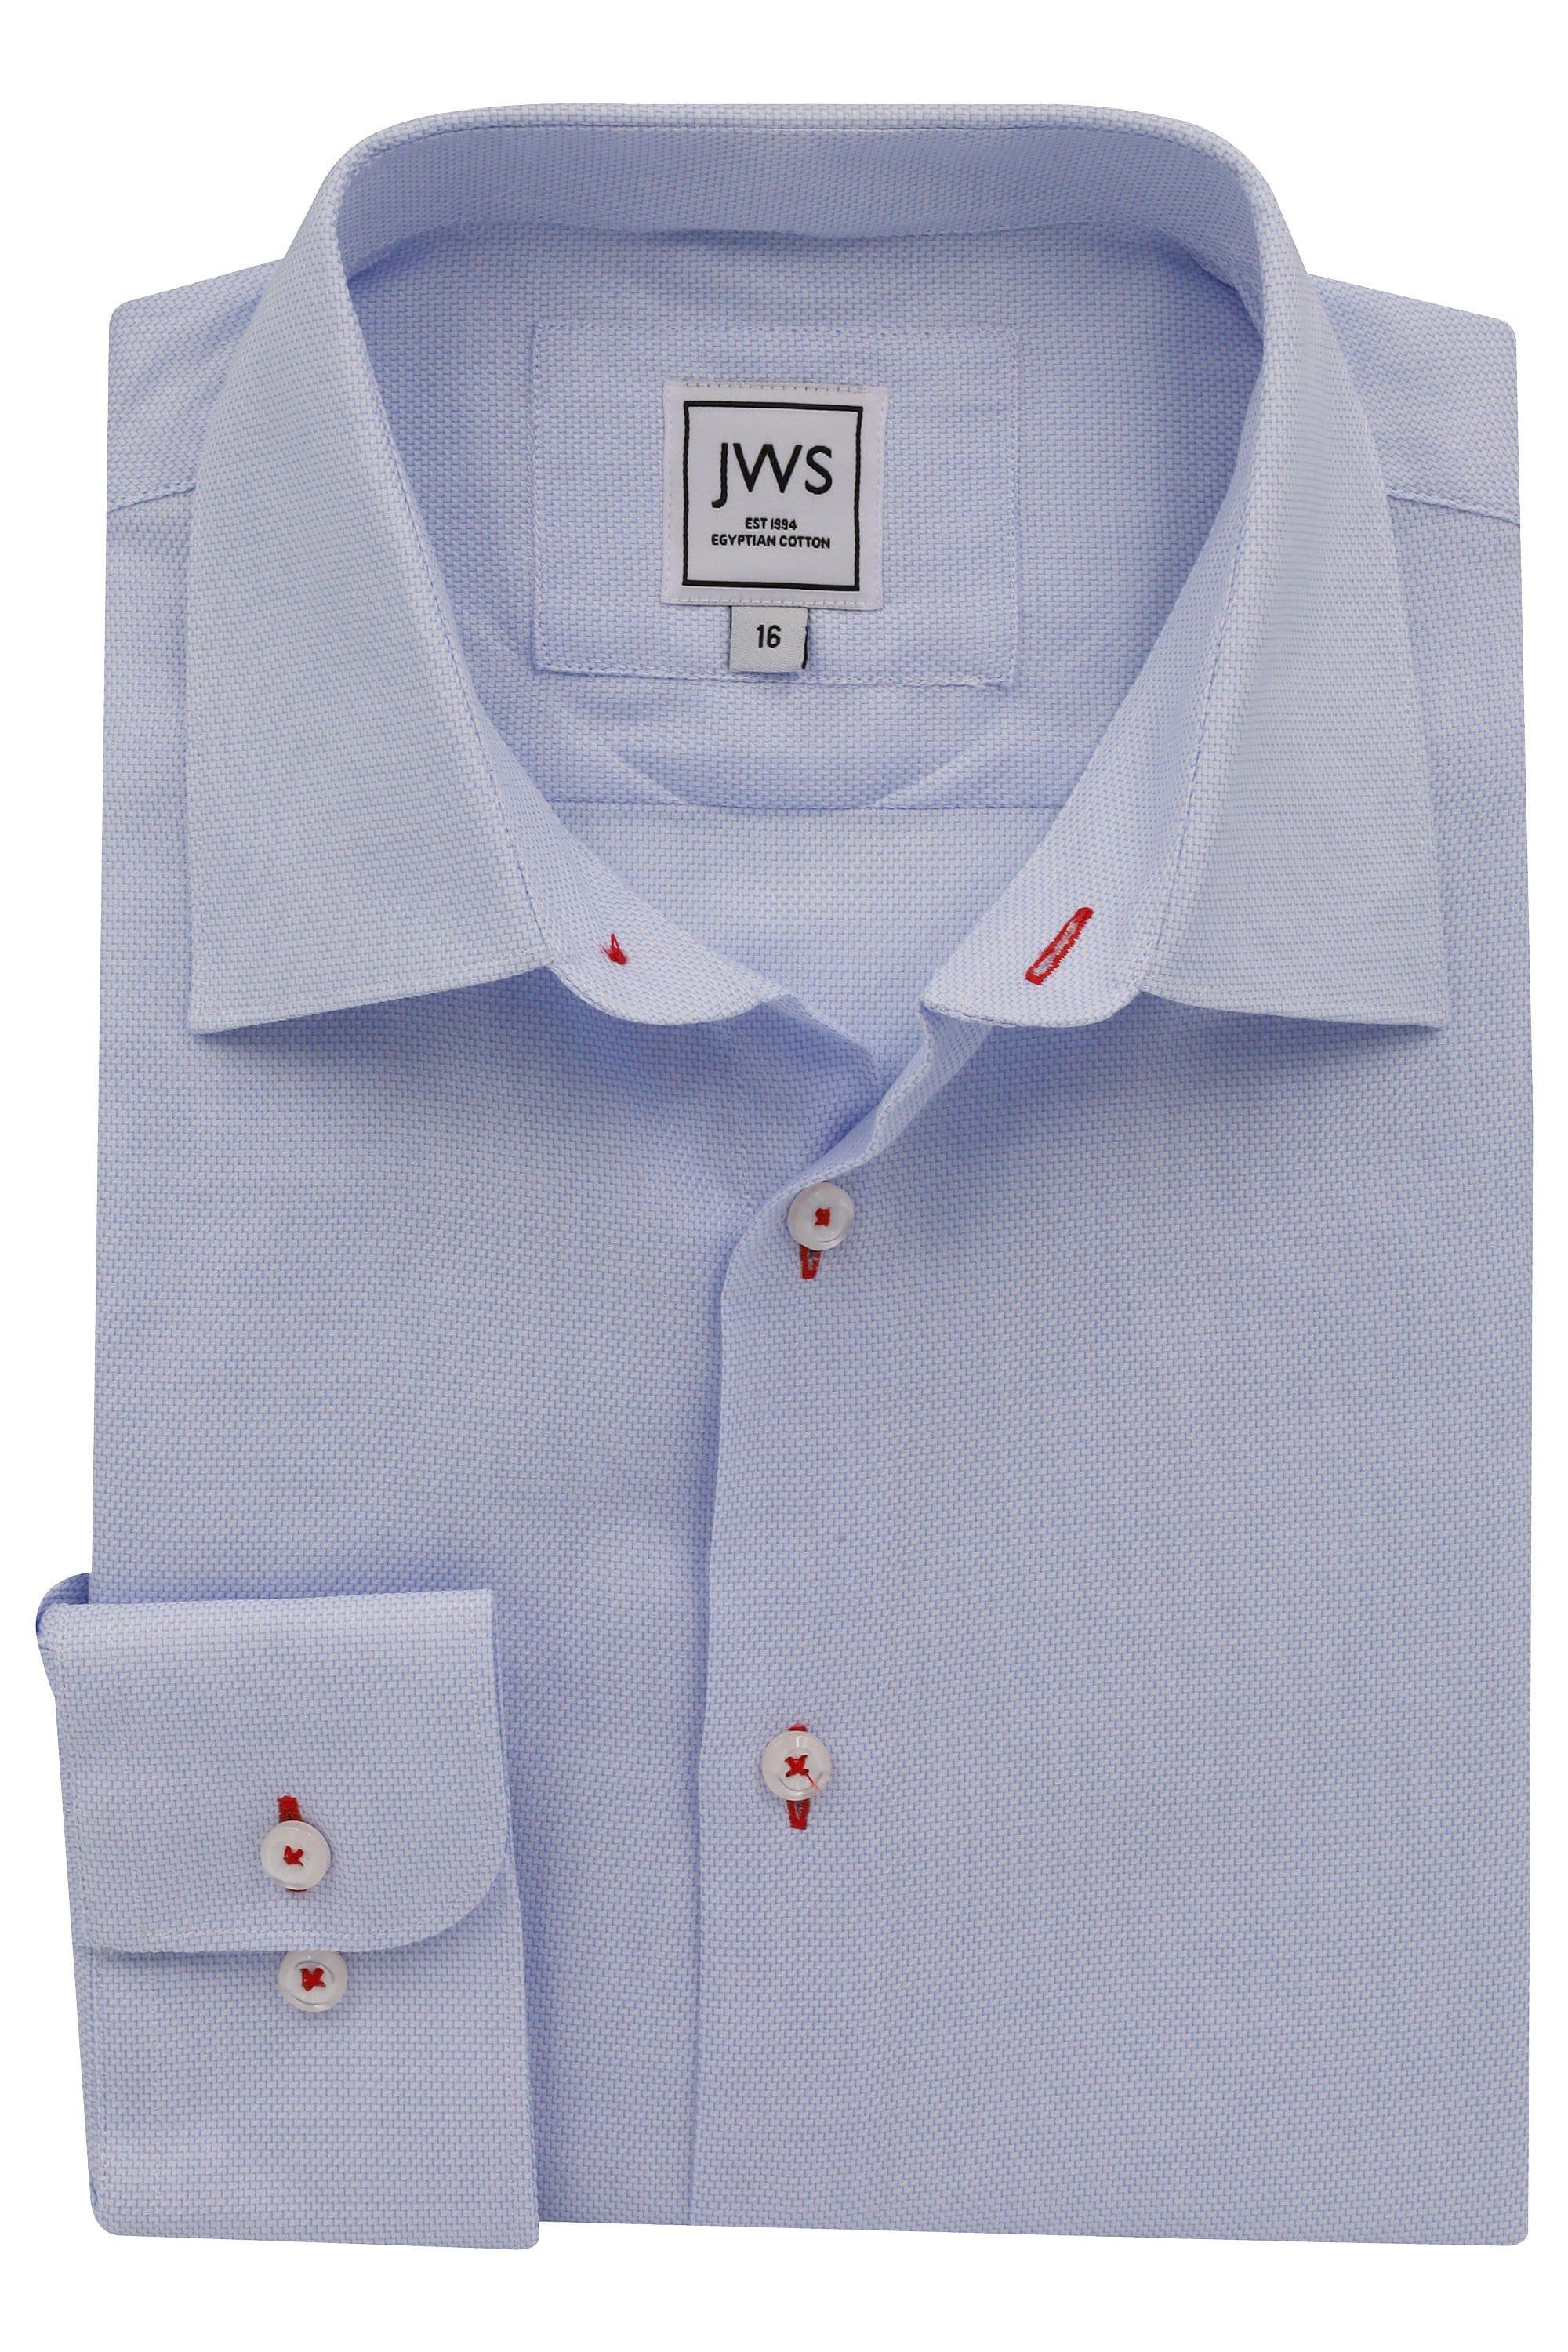 Sky Blue Diamond Micro Design Non Iron Egyptian Cotton Dress Shirt - Just White Shirts